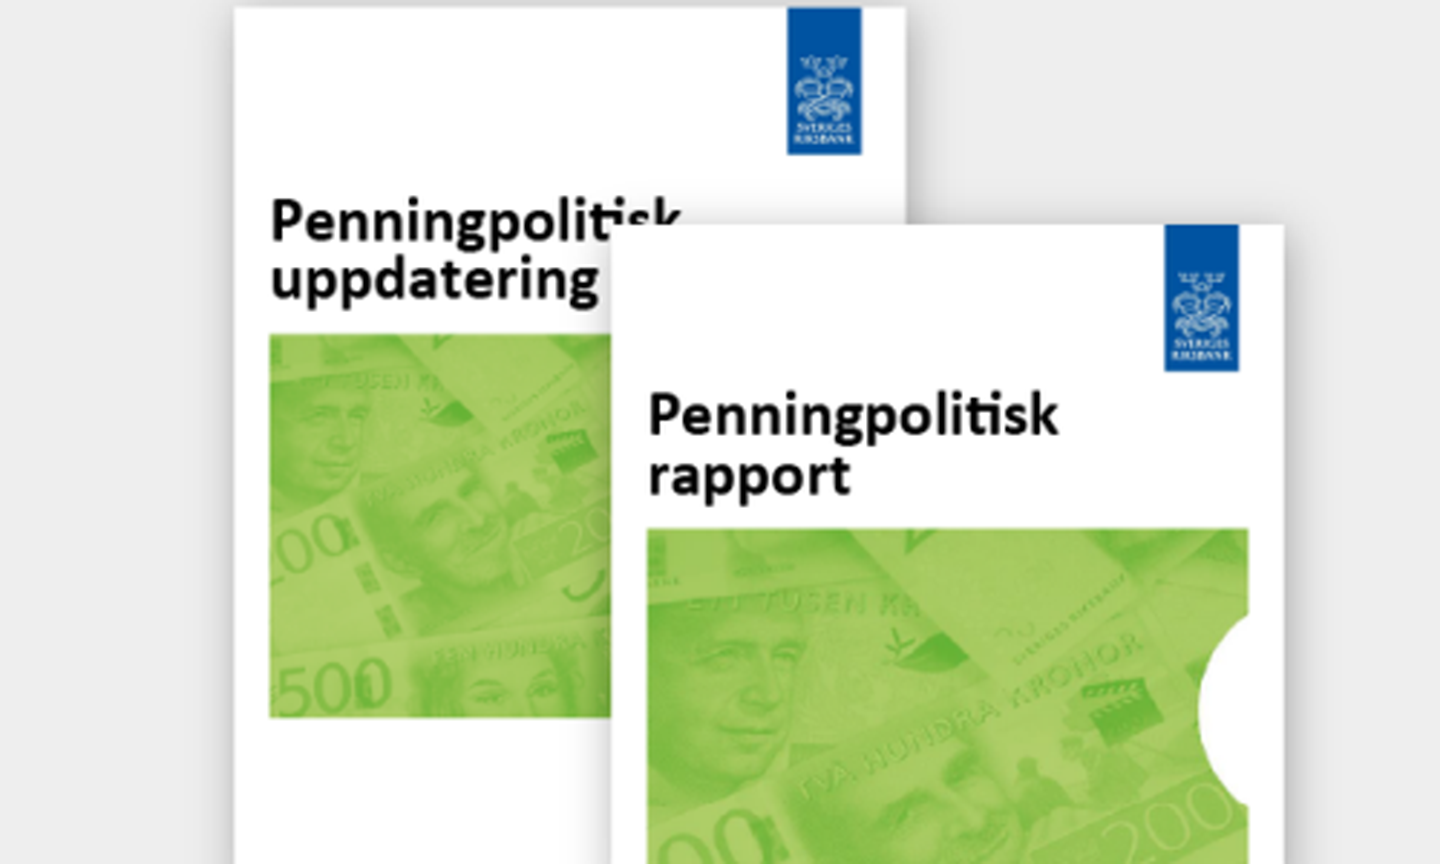 Omslag Penningpolitisk rapport och uppdatering